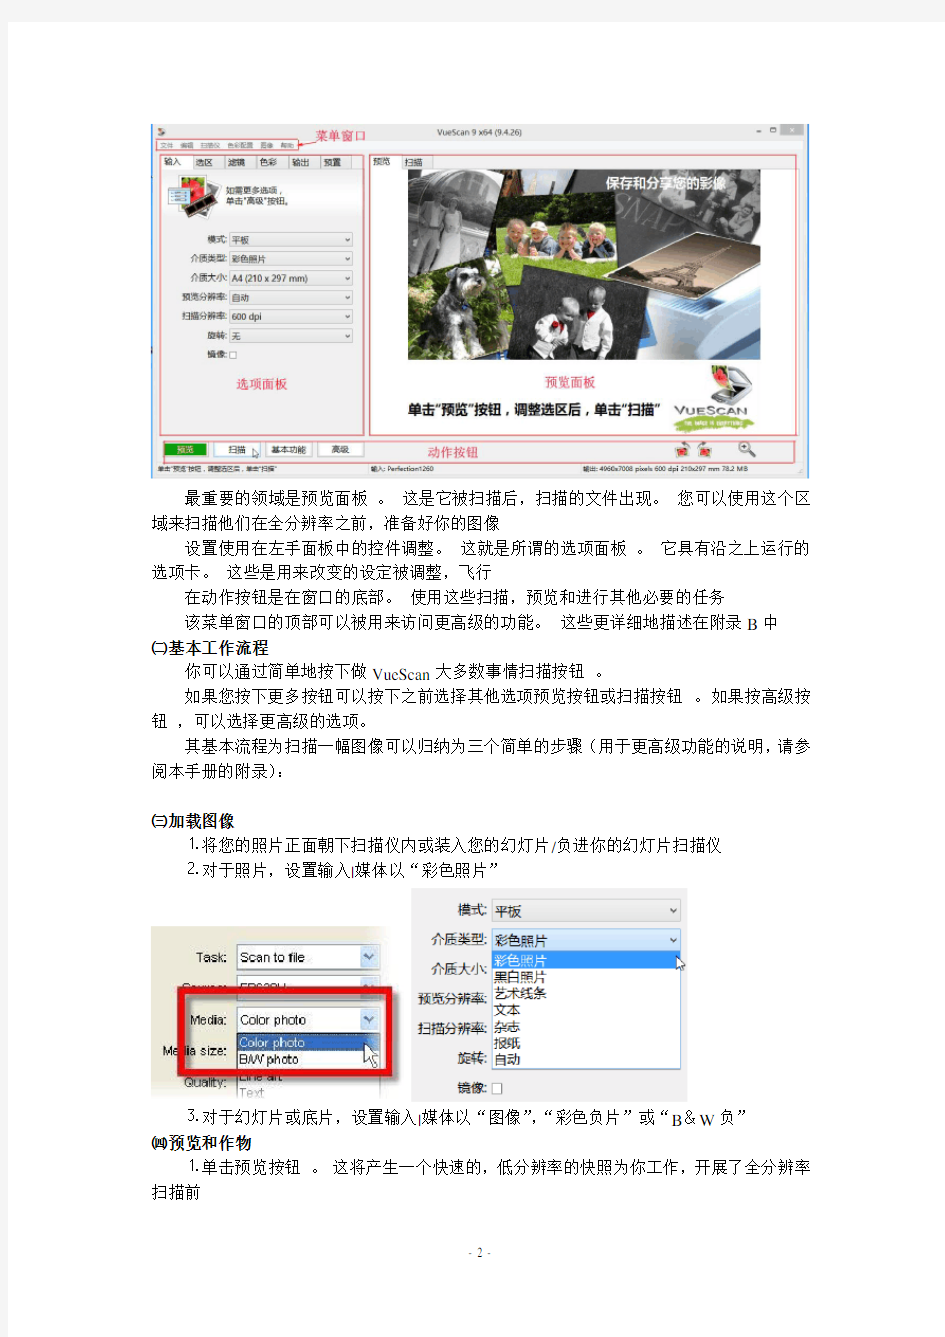 专业的相片扫描软件VueScan v9.4.26中文版用户指南